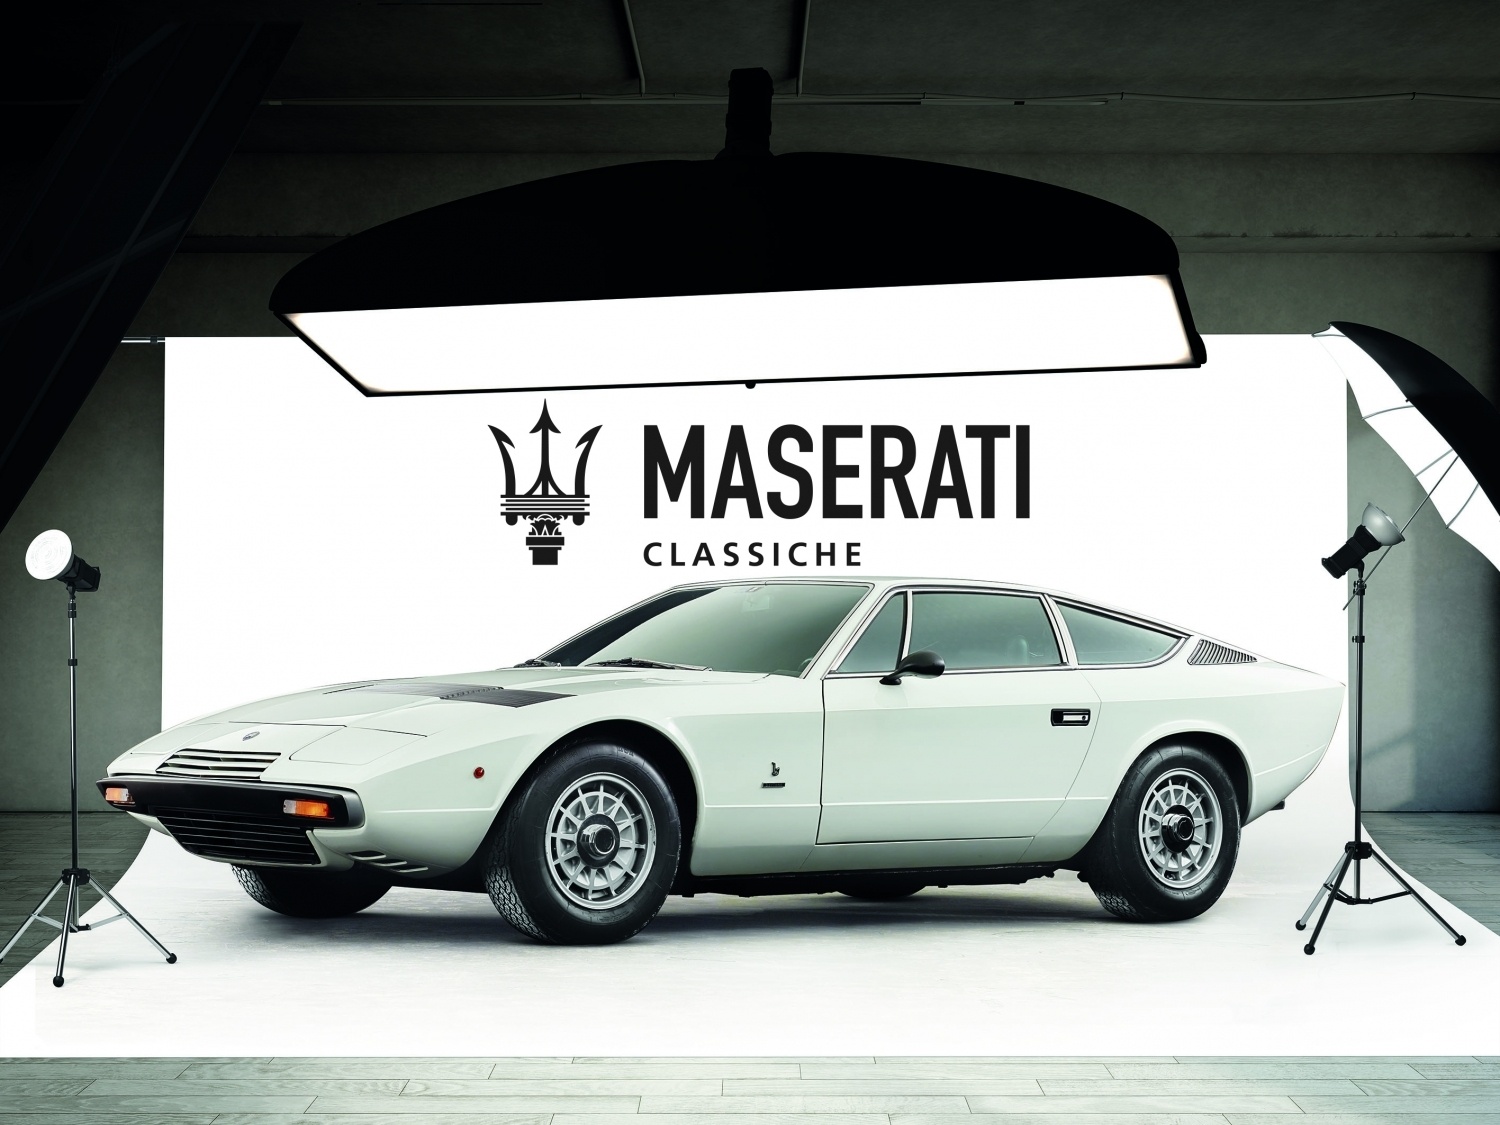 The new Maserati Classiche programme begins